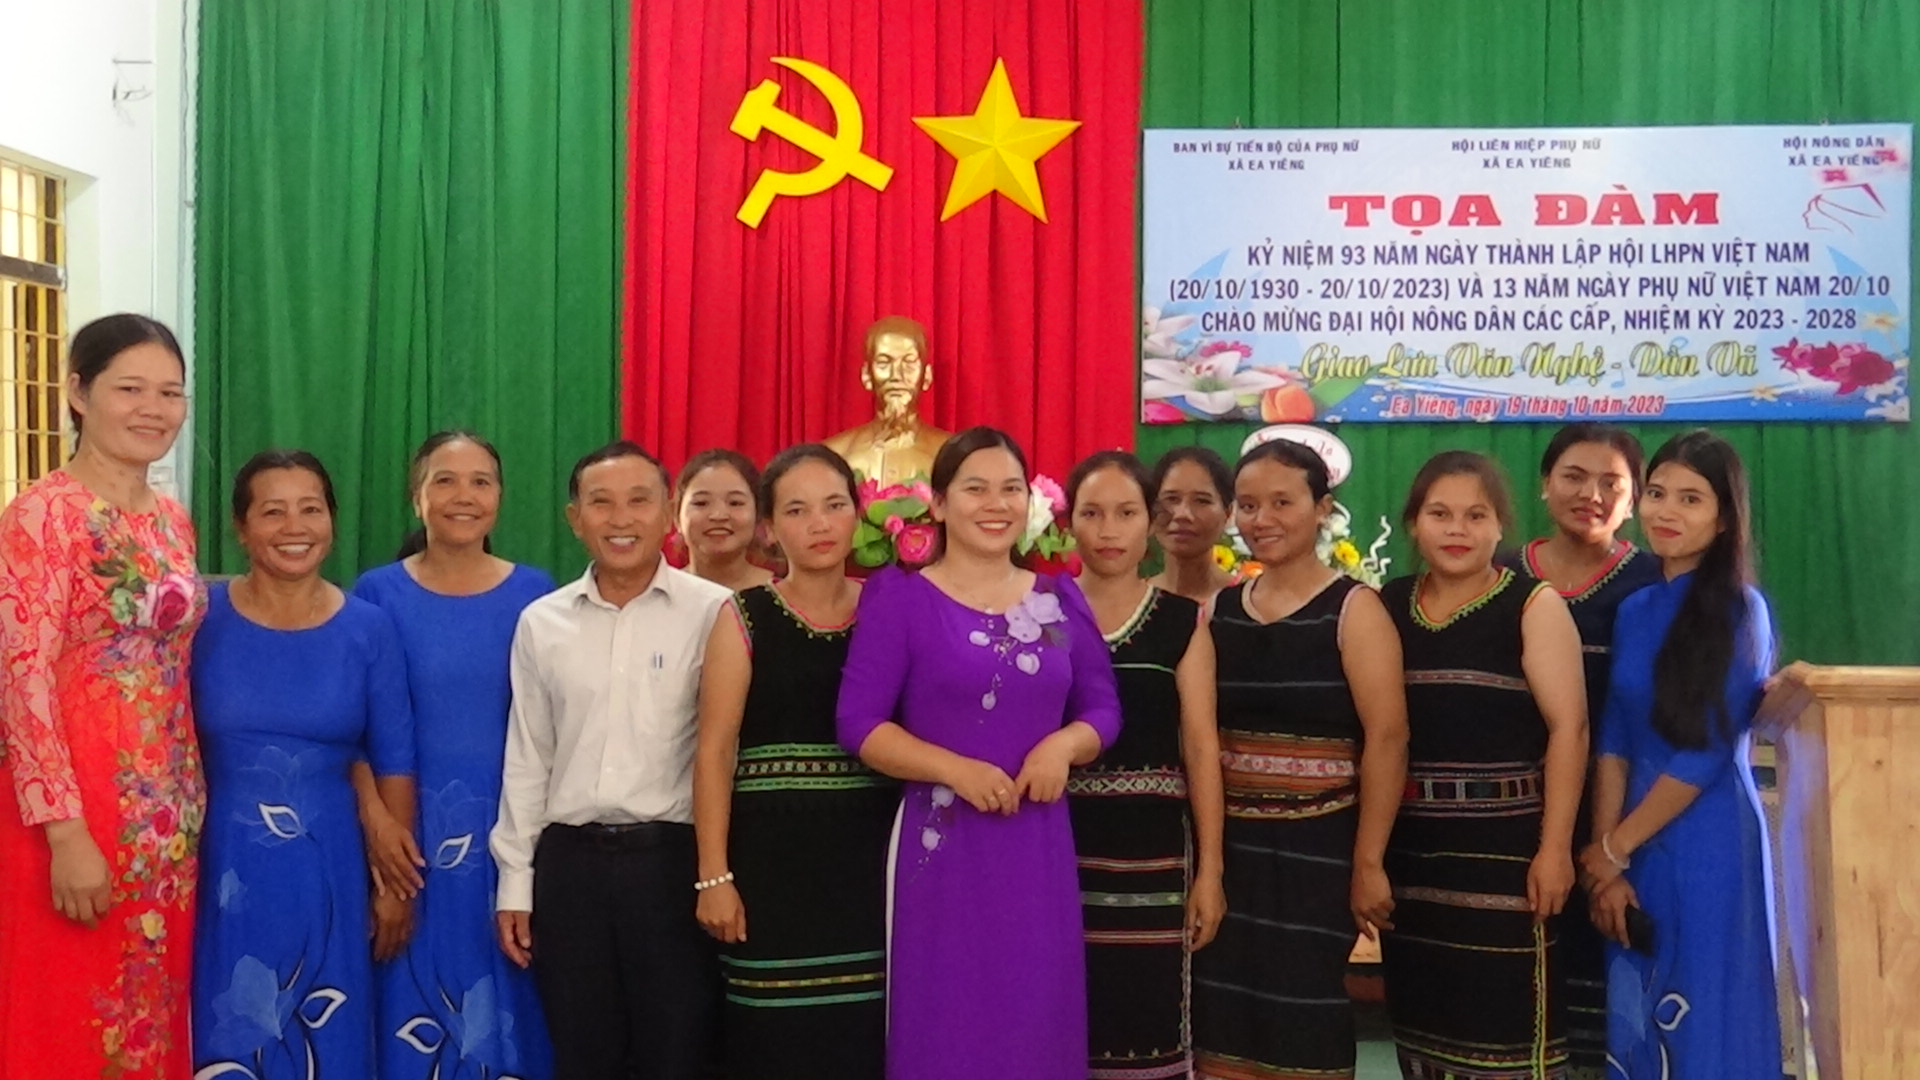 Ban vì sự tiến bộ phụ nữ, Hội LHPN xã tổ chức Tọa đàm nhân kỷ niệm 93 năm ngày thành lập Hội LHPN Việt Nam 20/10